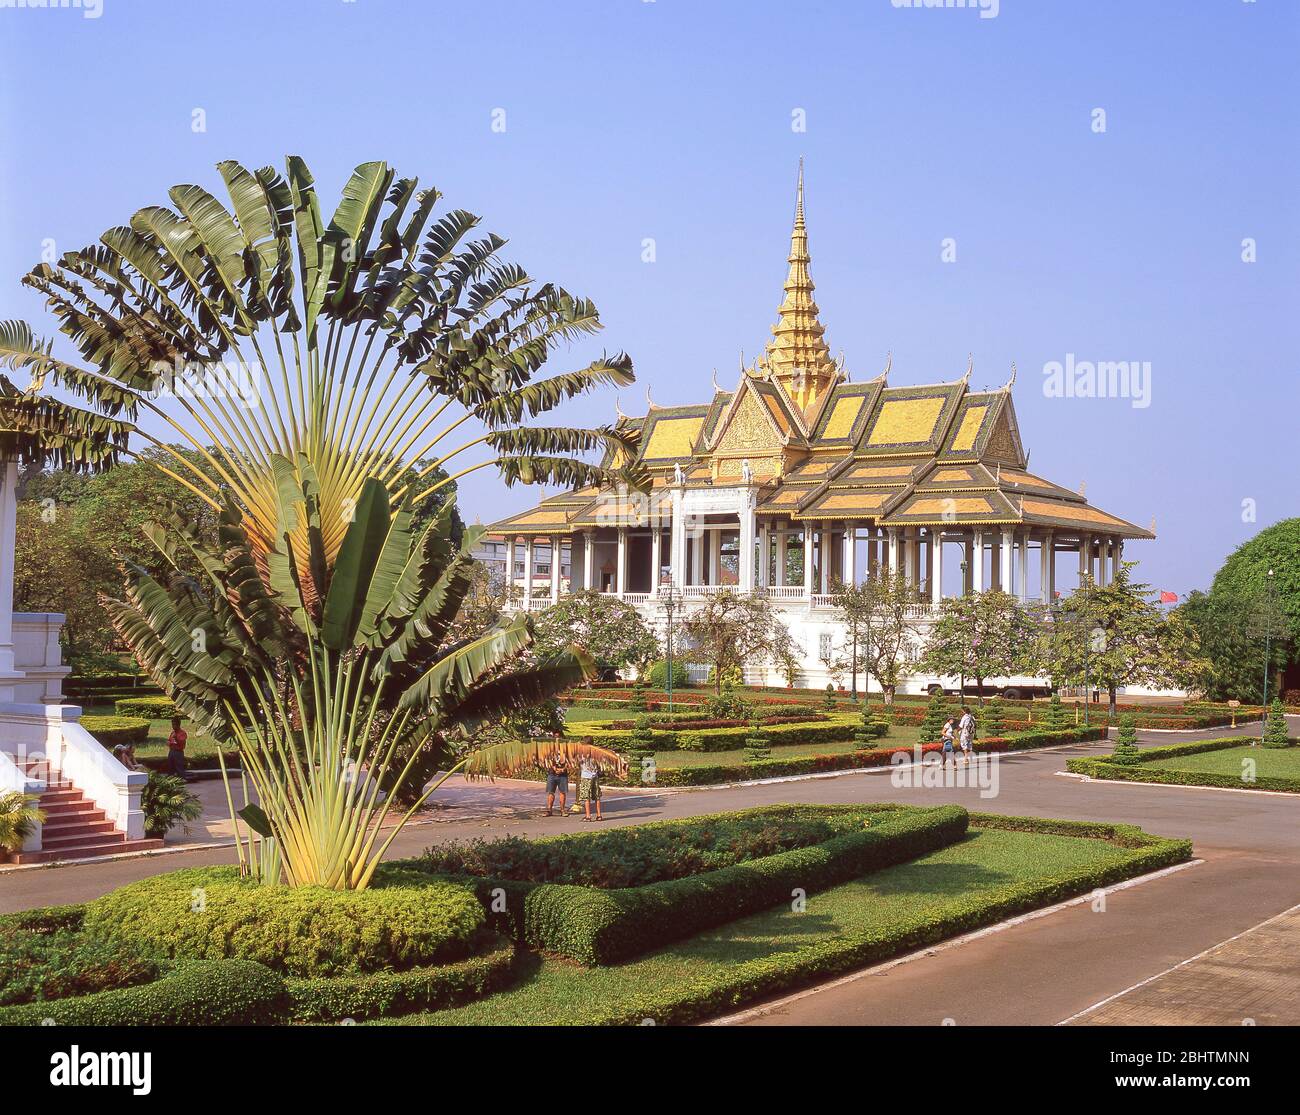 Padiglione al chiaro di luna al Palazzo reale di Cambogia, Phnom Penh, Regno di Cambogia Foto Stock